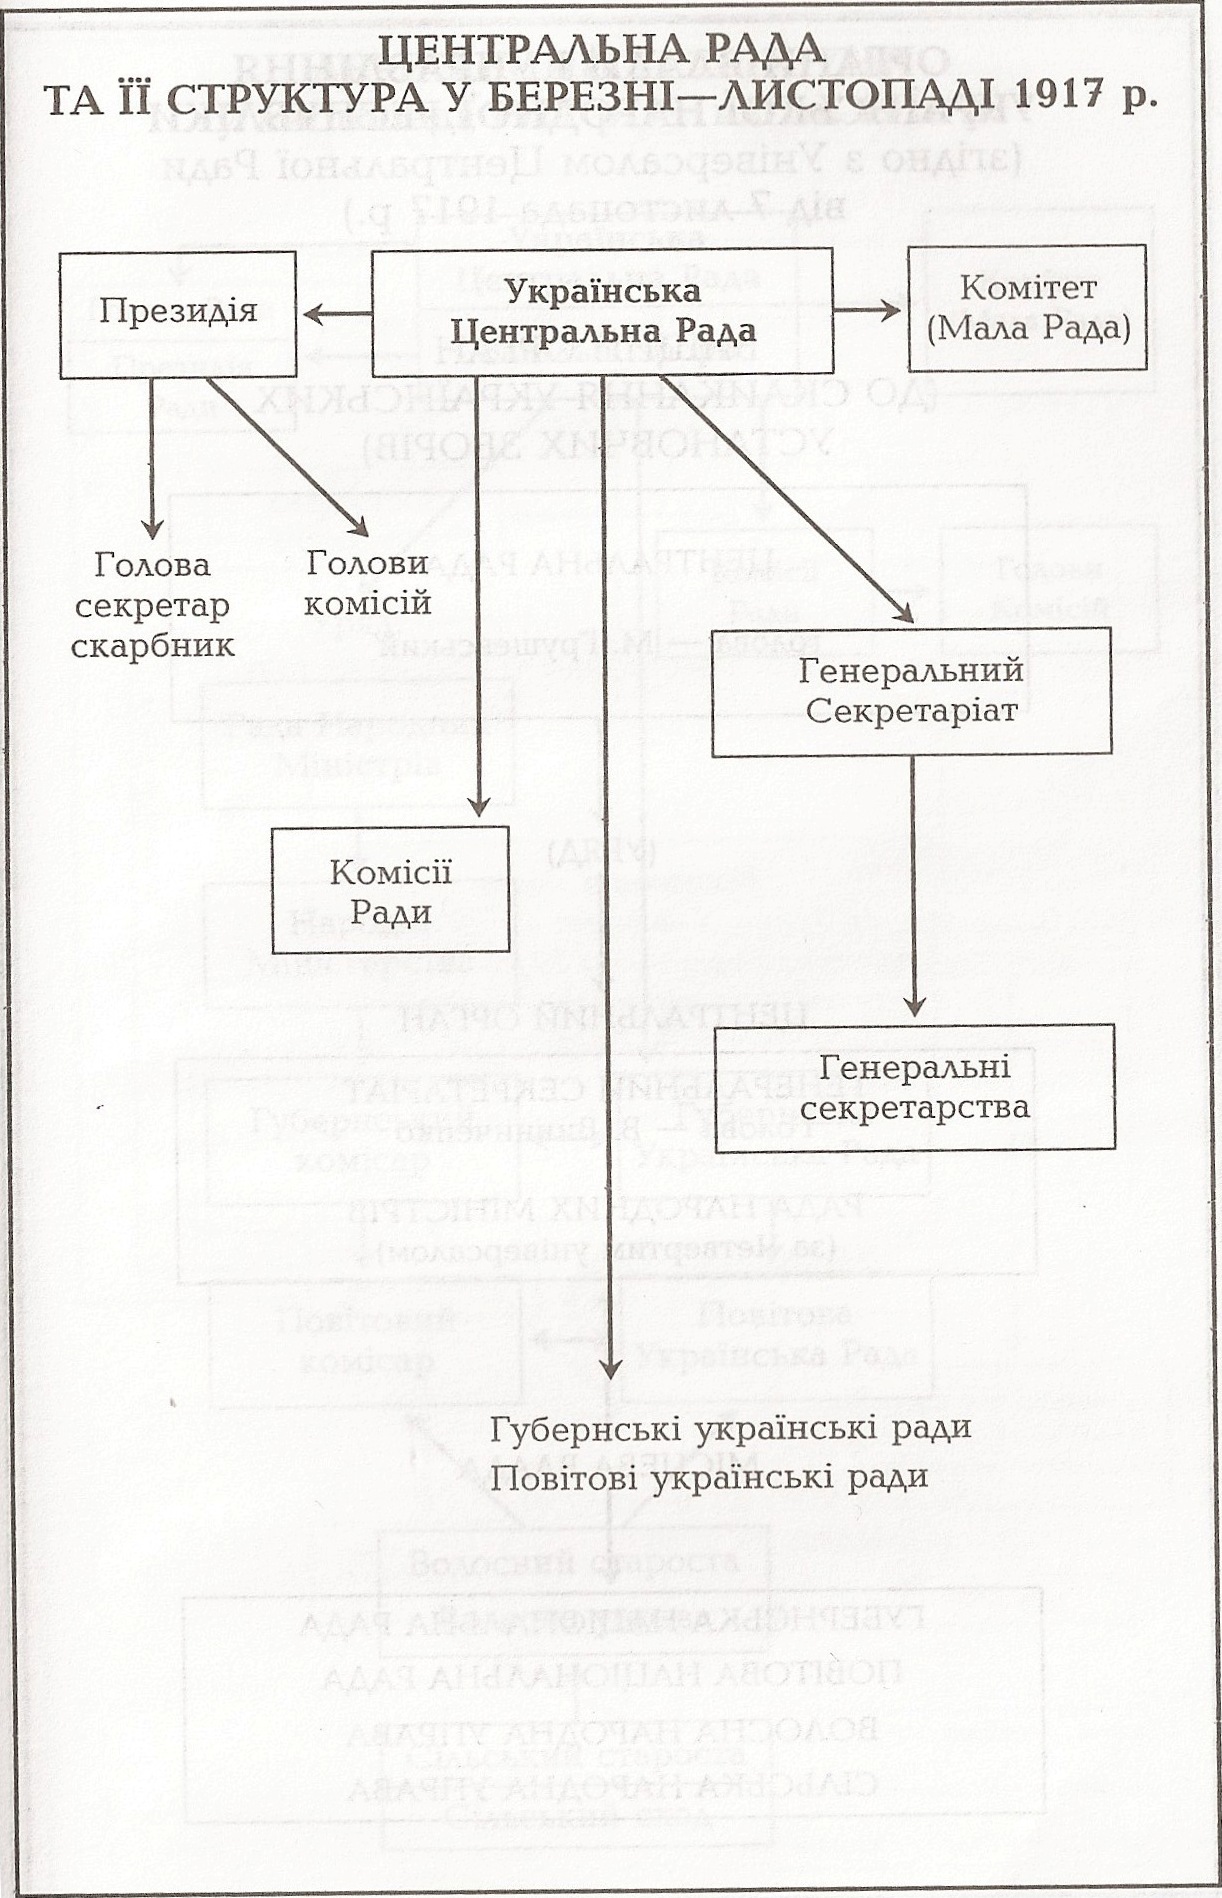 Таблица: Центральный Совет и его структура в марте-ноябре 1917 г.